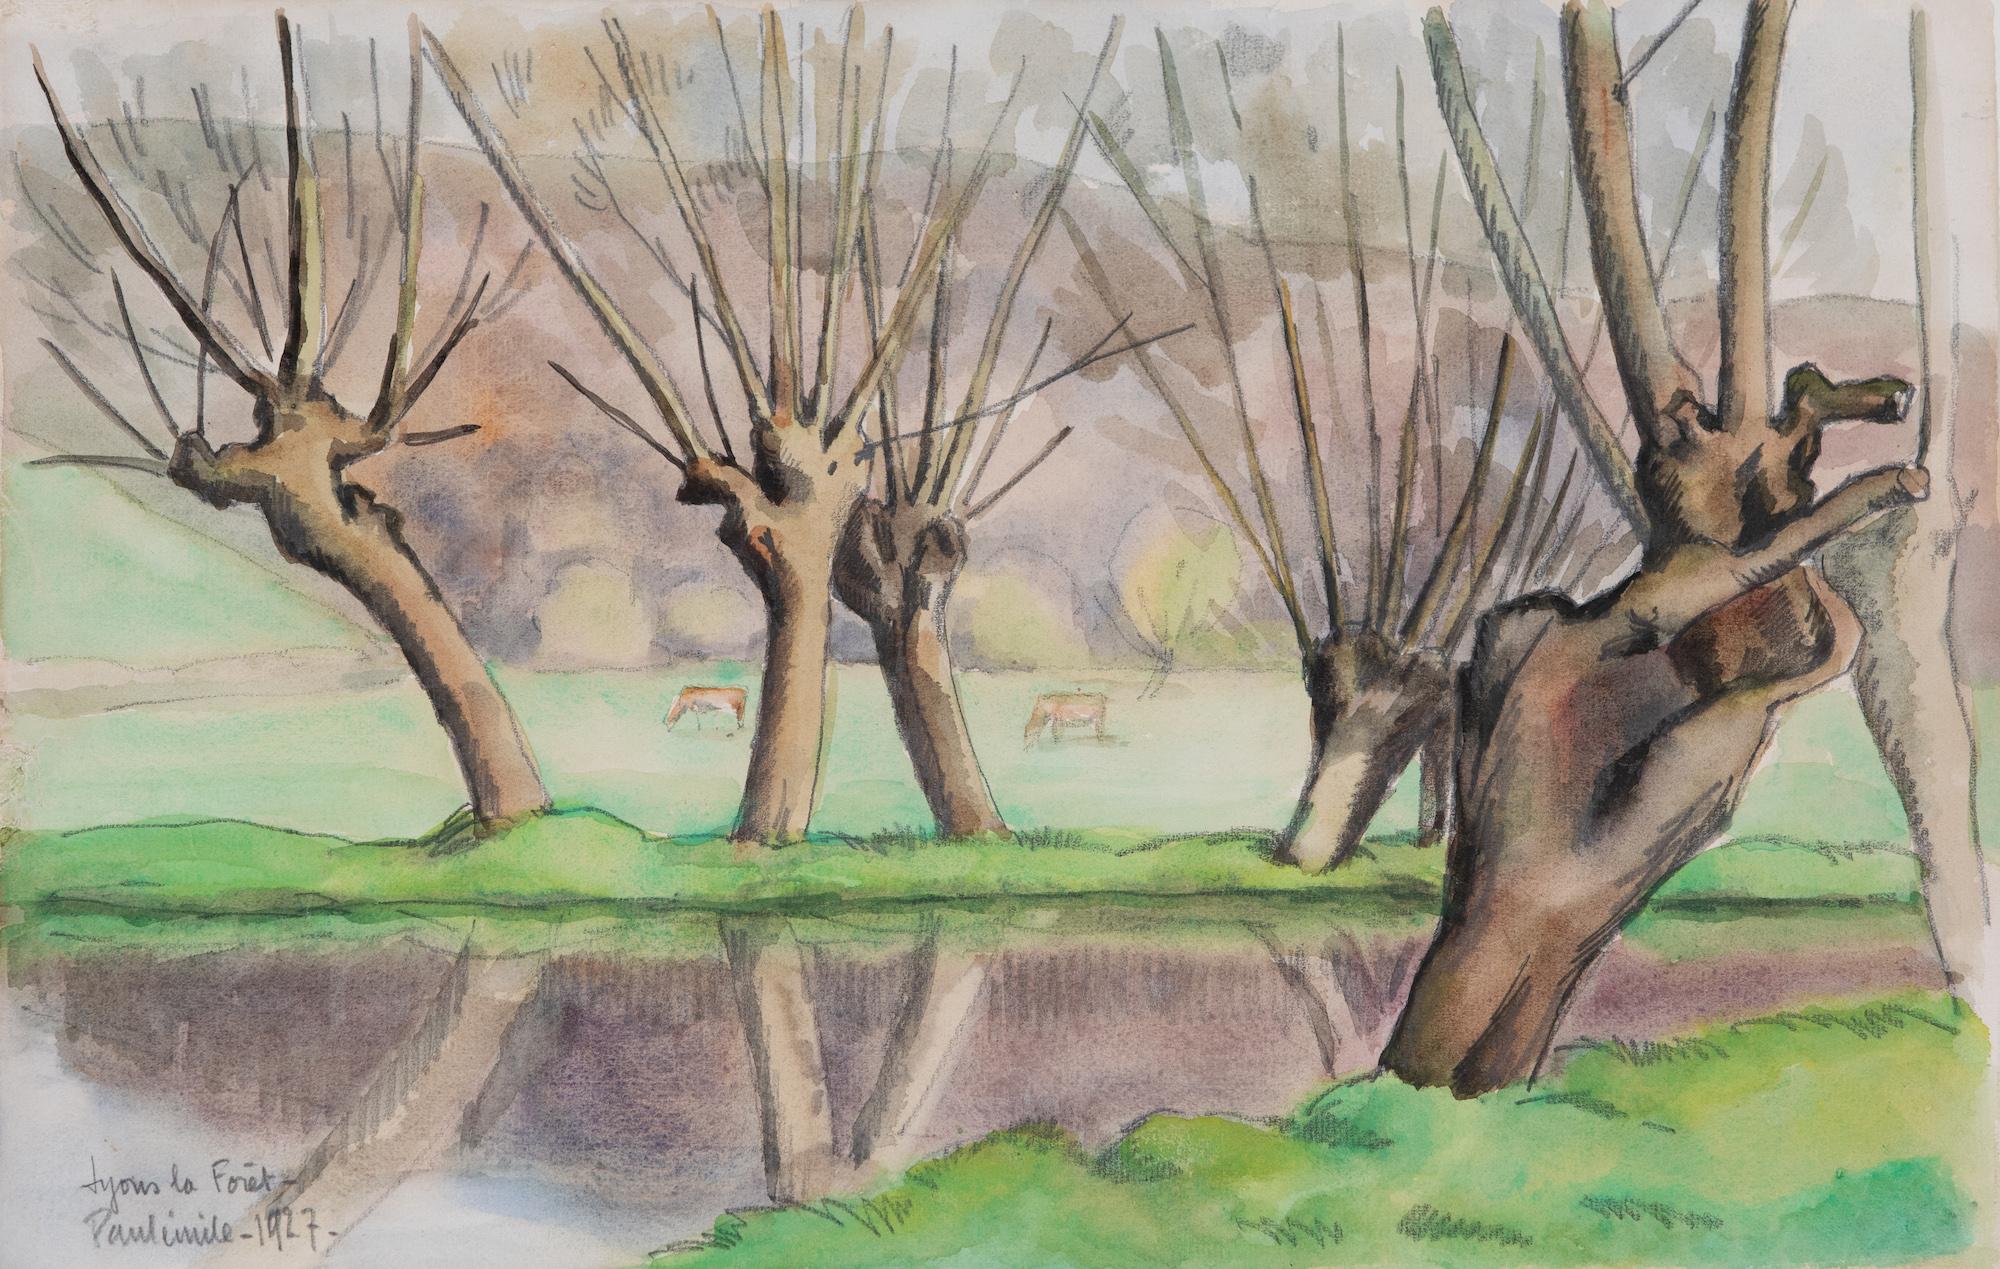 Paul Emile Pissarro Landscape Art - River Eure, Lyons la Forêt by Paulémile Pissarro - Landscape watercolour